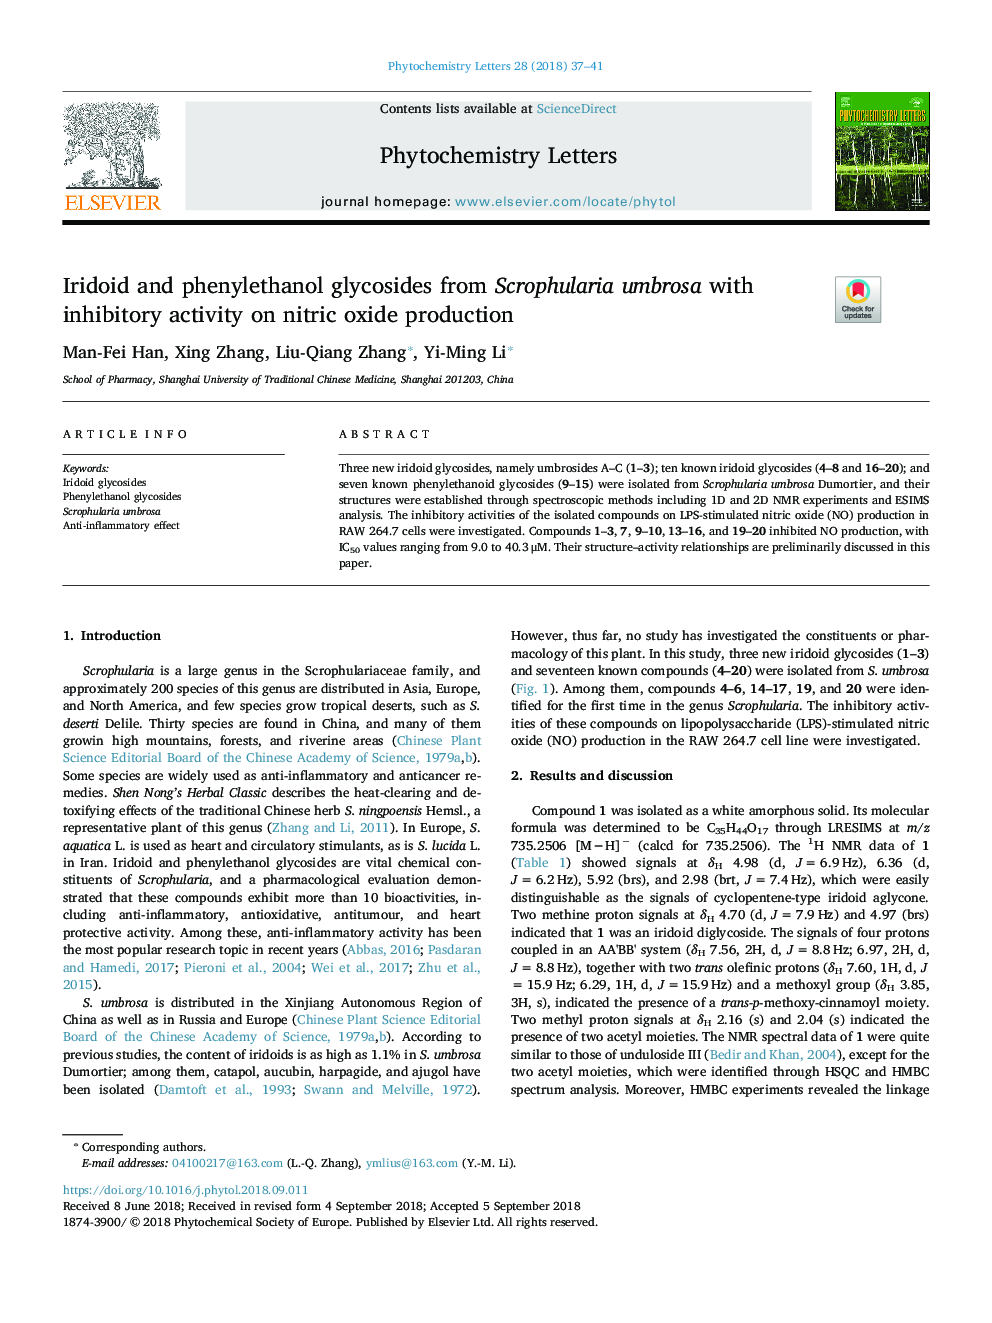 Iridoid and phenylethanol glycosides from Scrophularia umbrosa with inhibitory activity on nitric oxide production